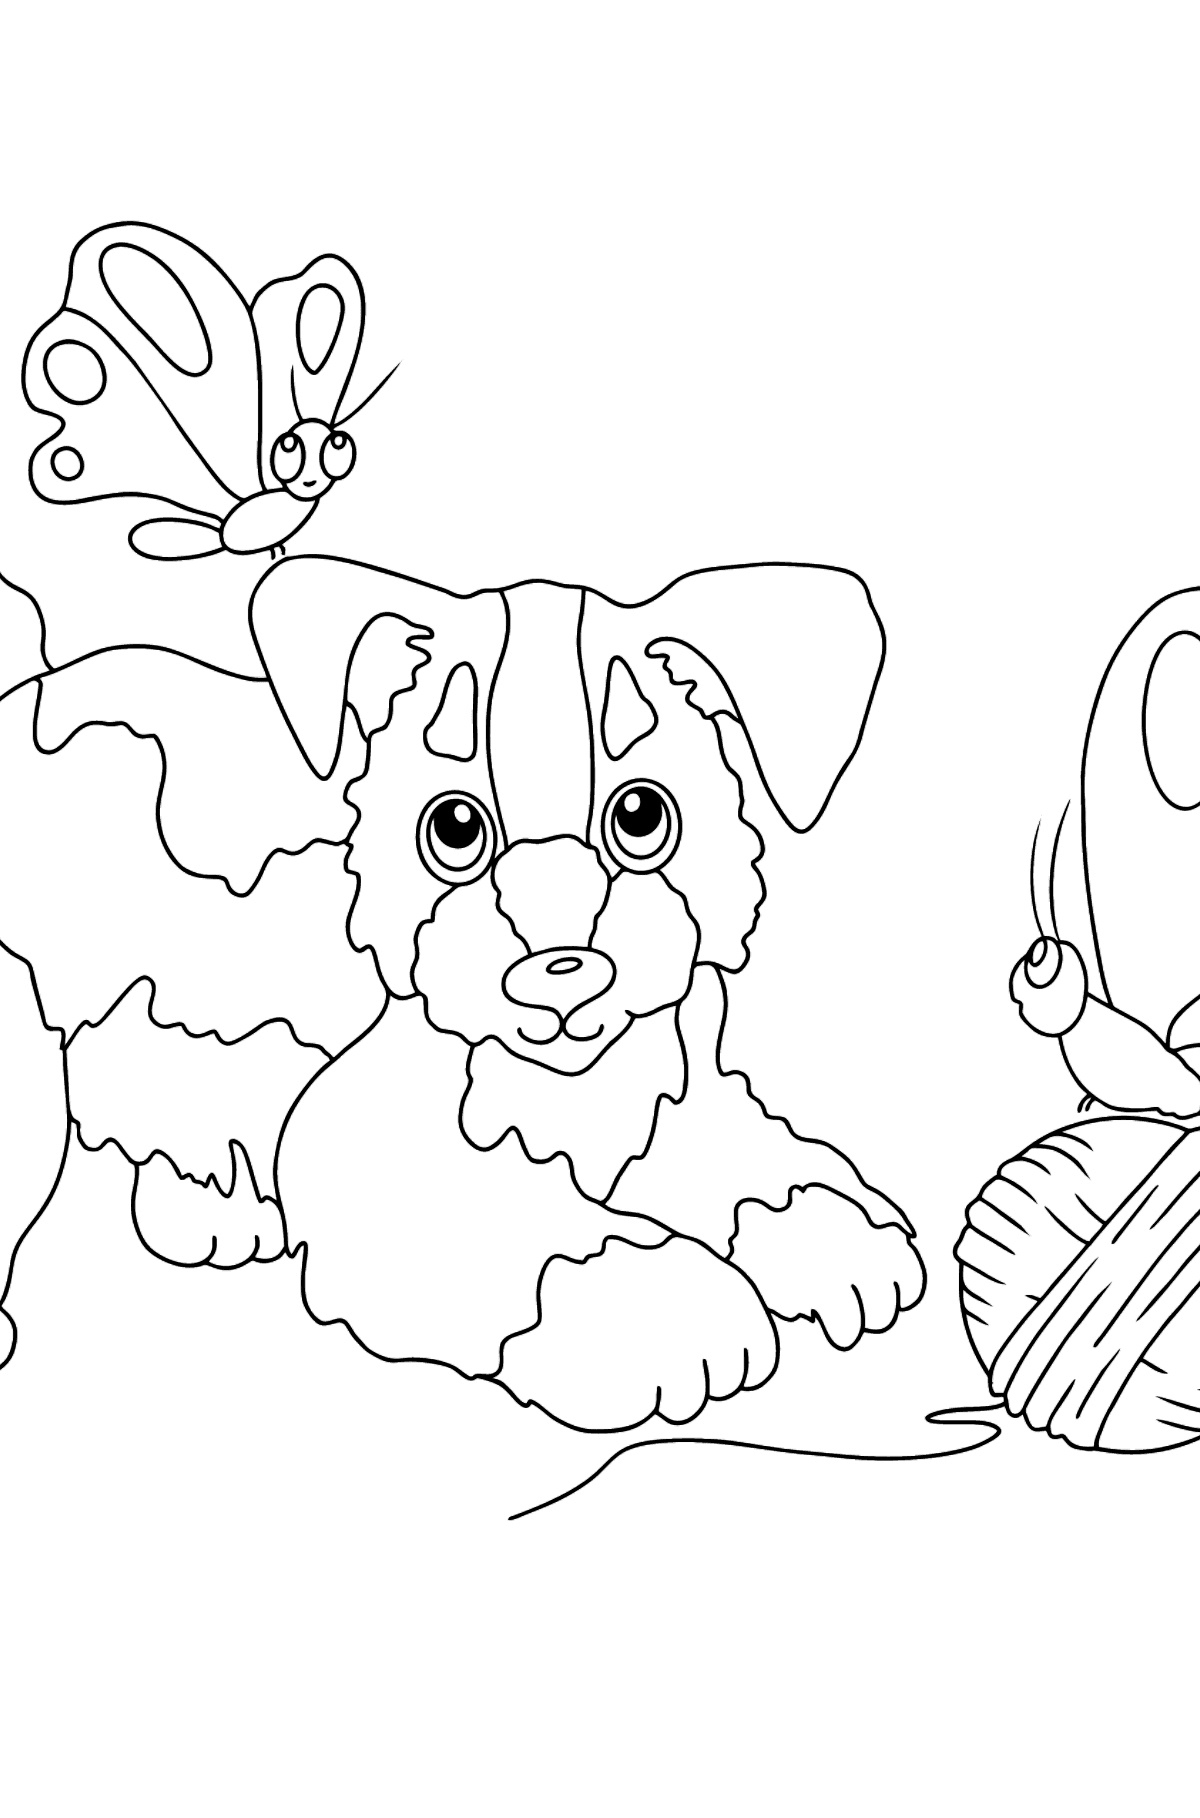 Tegning til fargelegging hund som leker (vanskelig) - Tegninger til fargelegging for barn